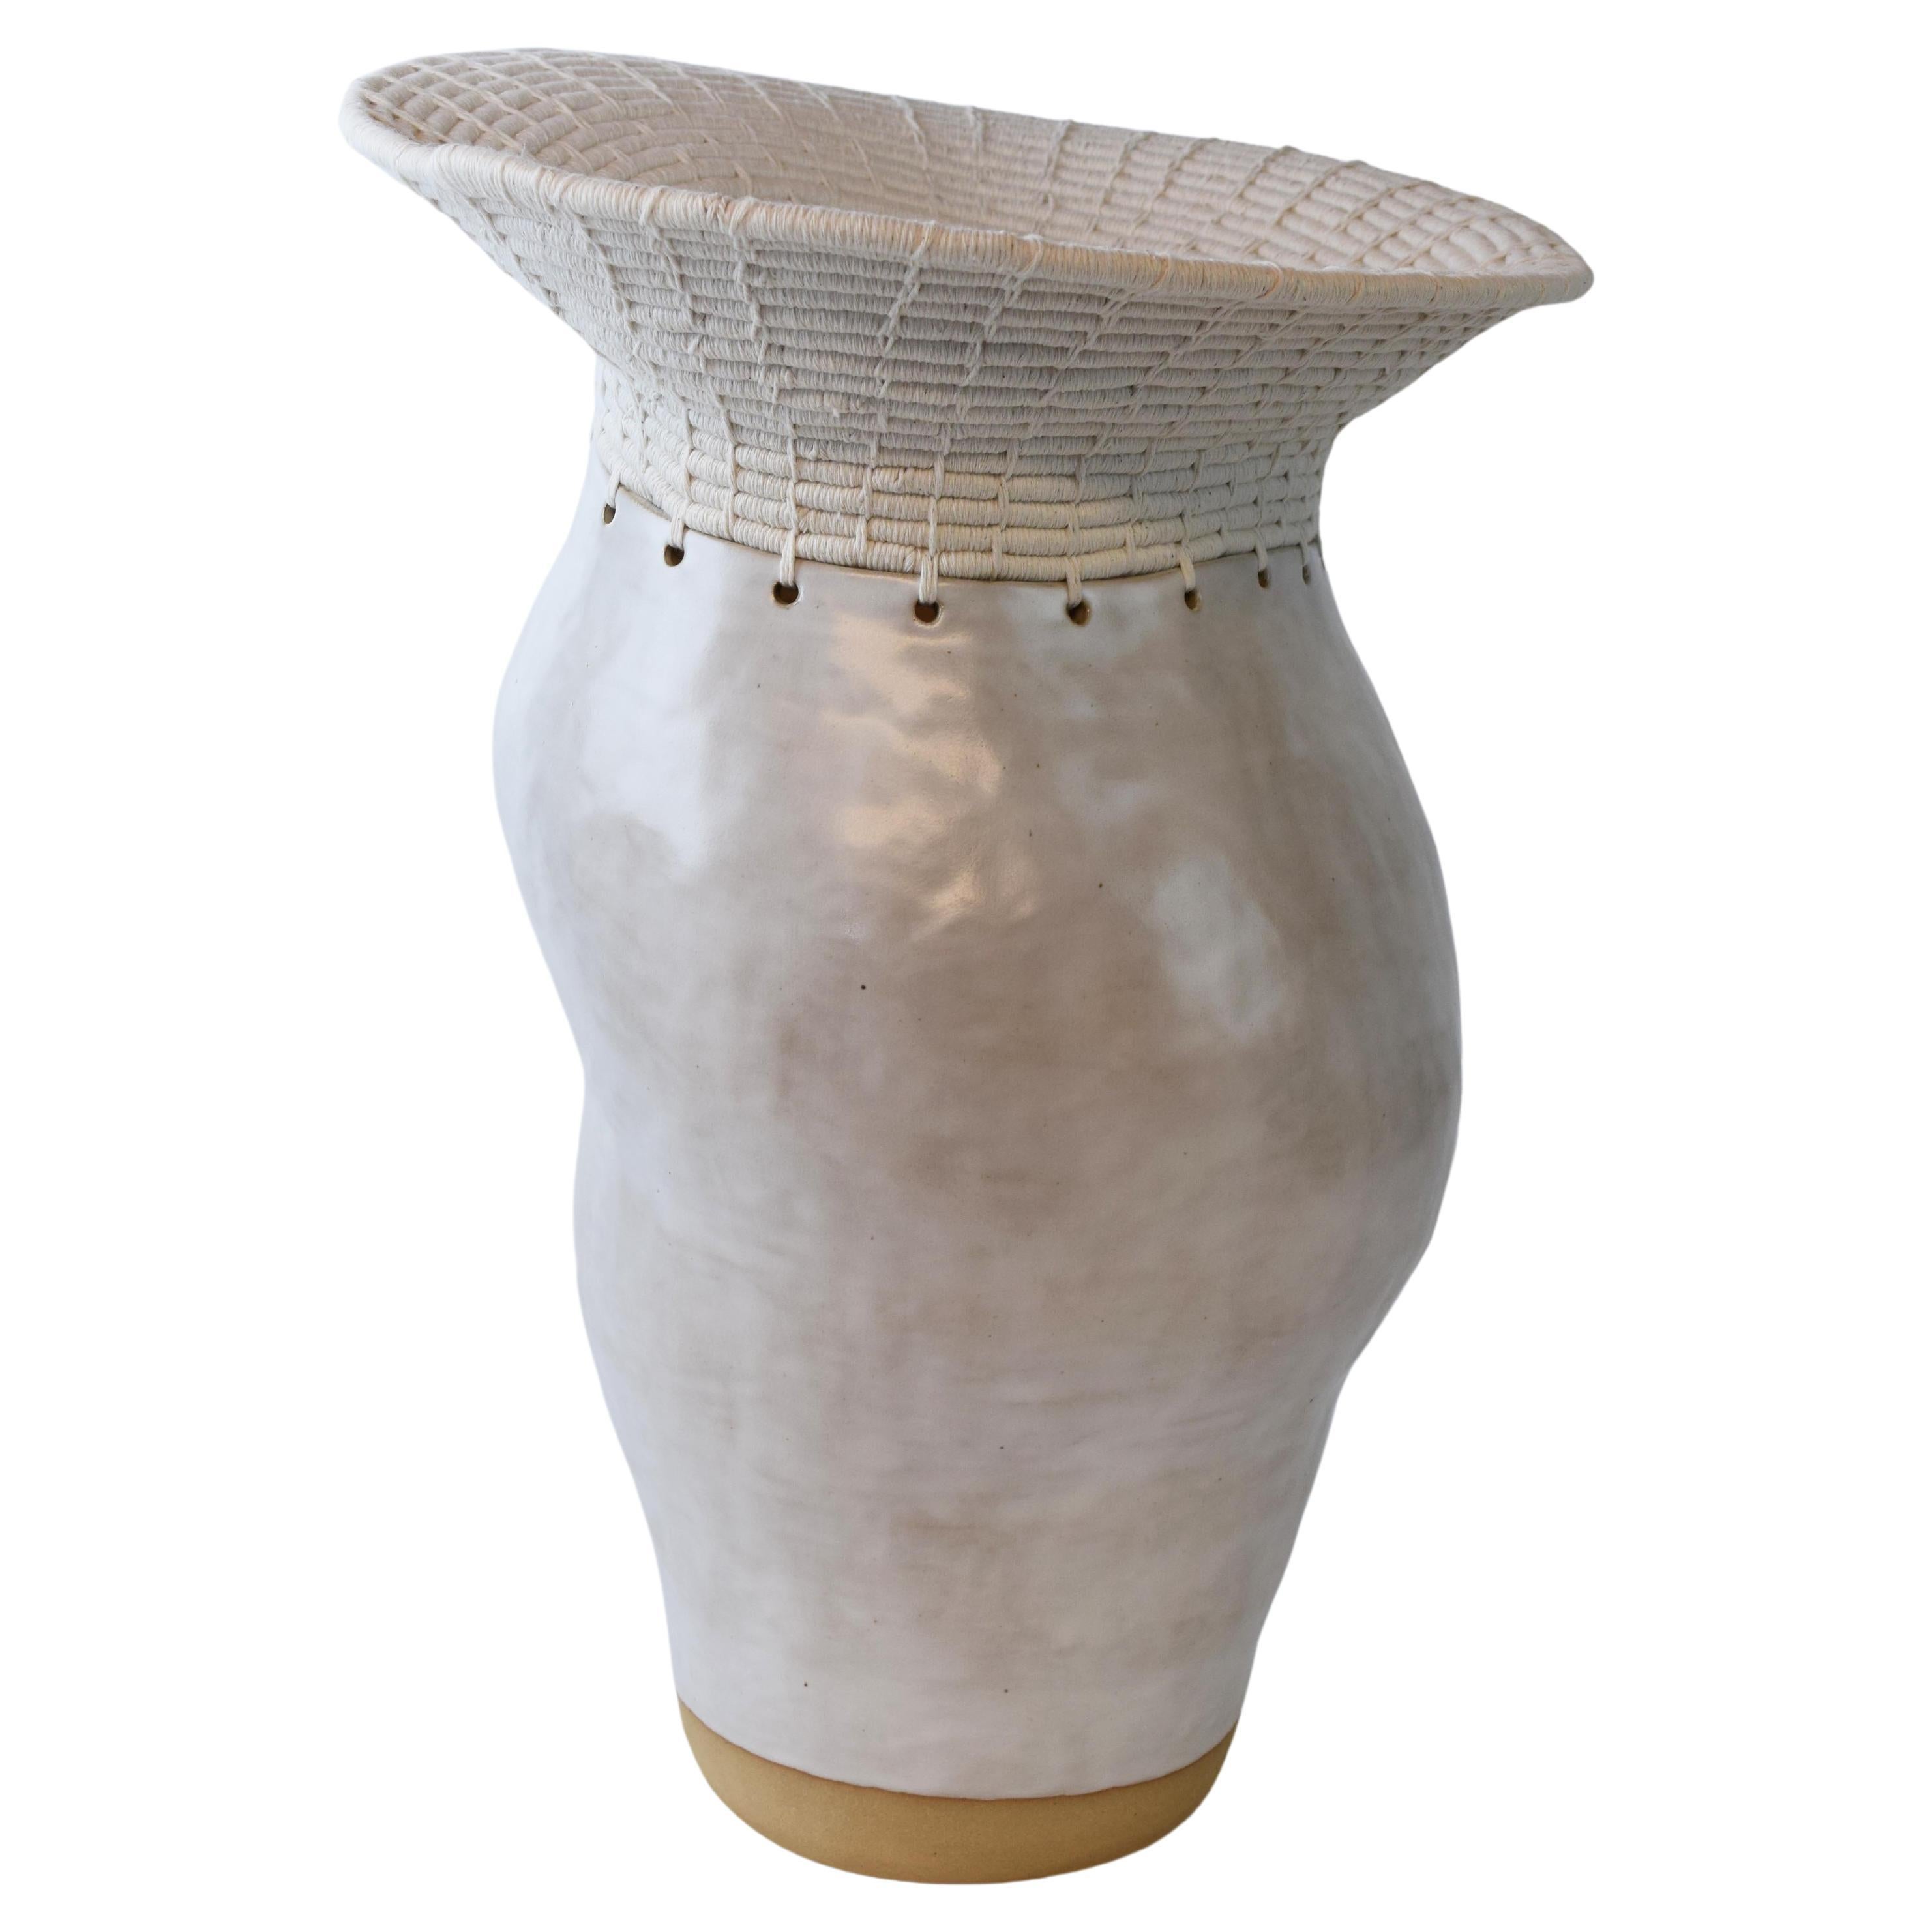 Vase asymétrique en céramique n° 771, glaçure blanche et coton tissé, unique en son genre